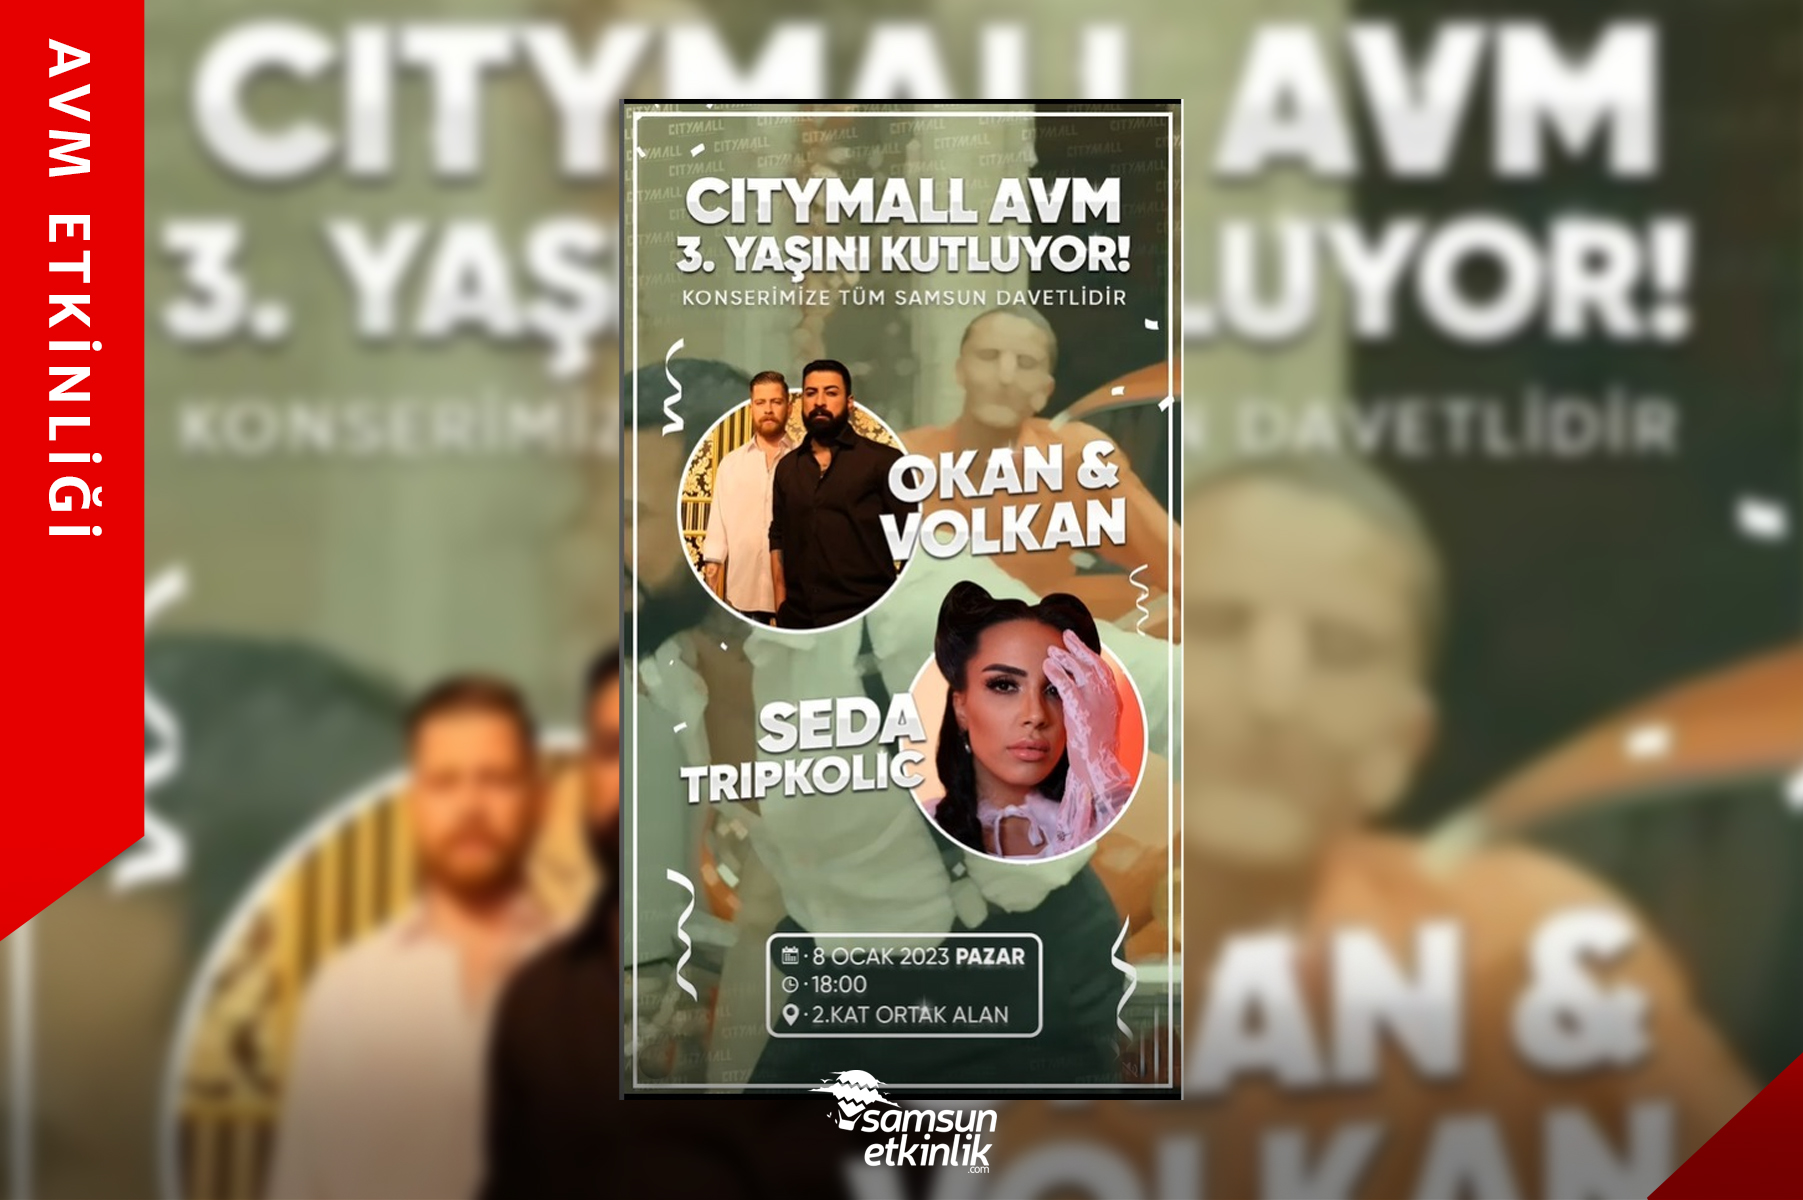 CityMall AVM 3. Yılını Kutluyor!